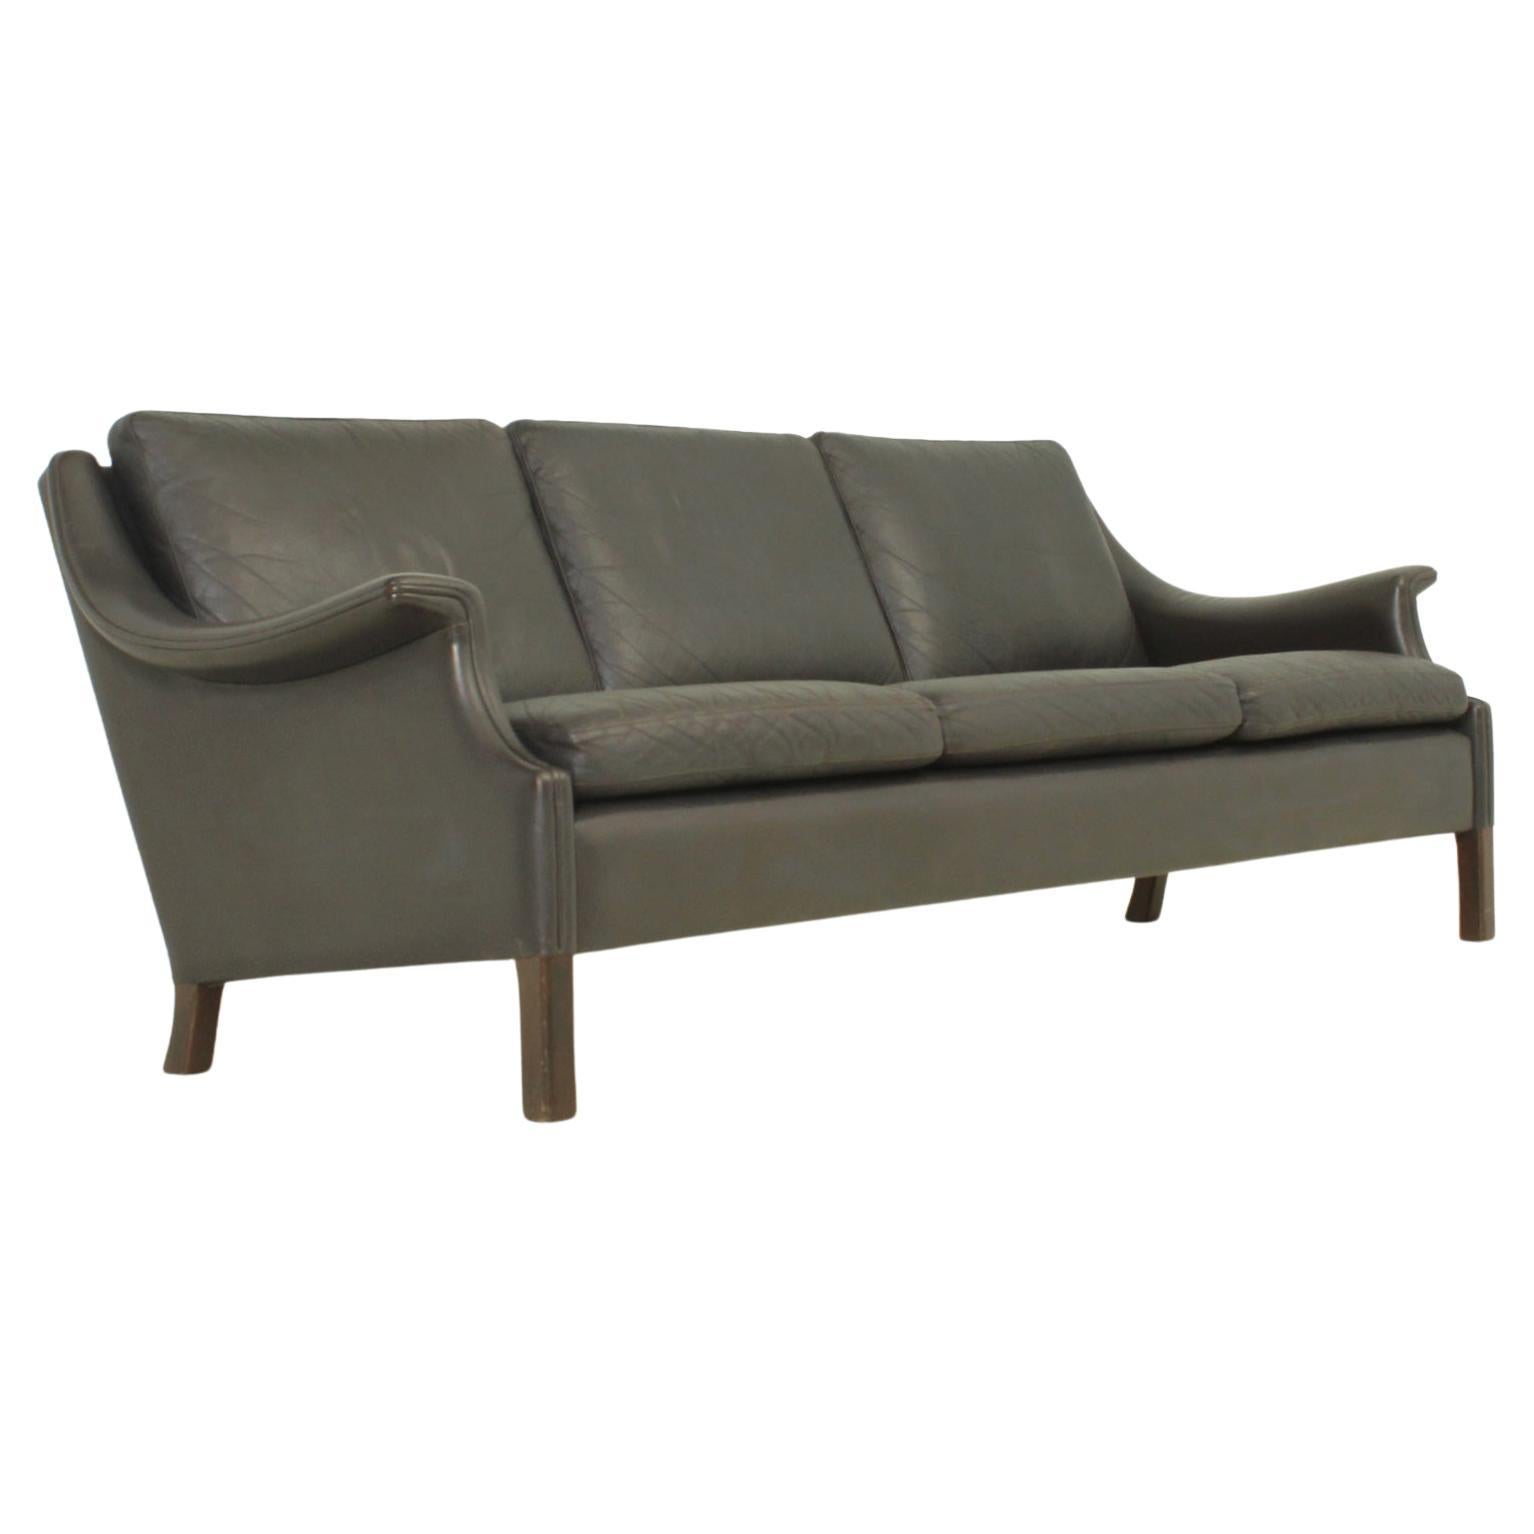 Dreisitziges Sofa von Aage Christiansen aus dunkelbraunem Leder